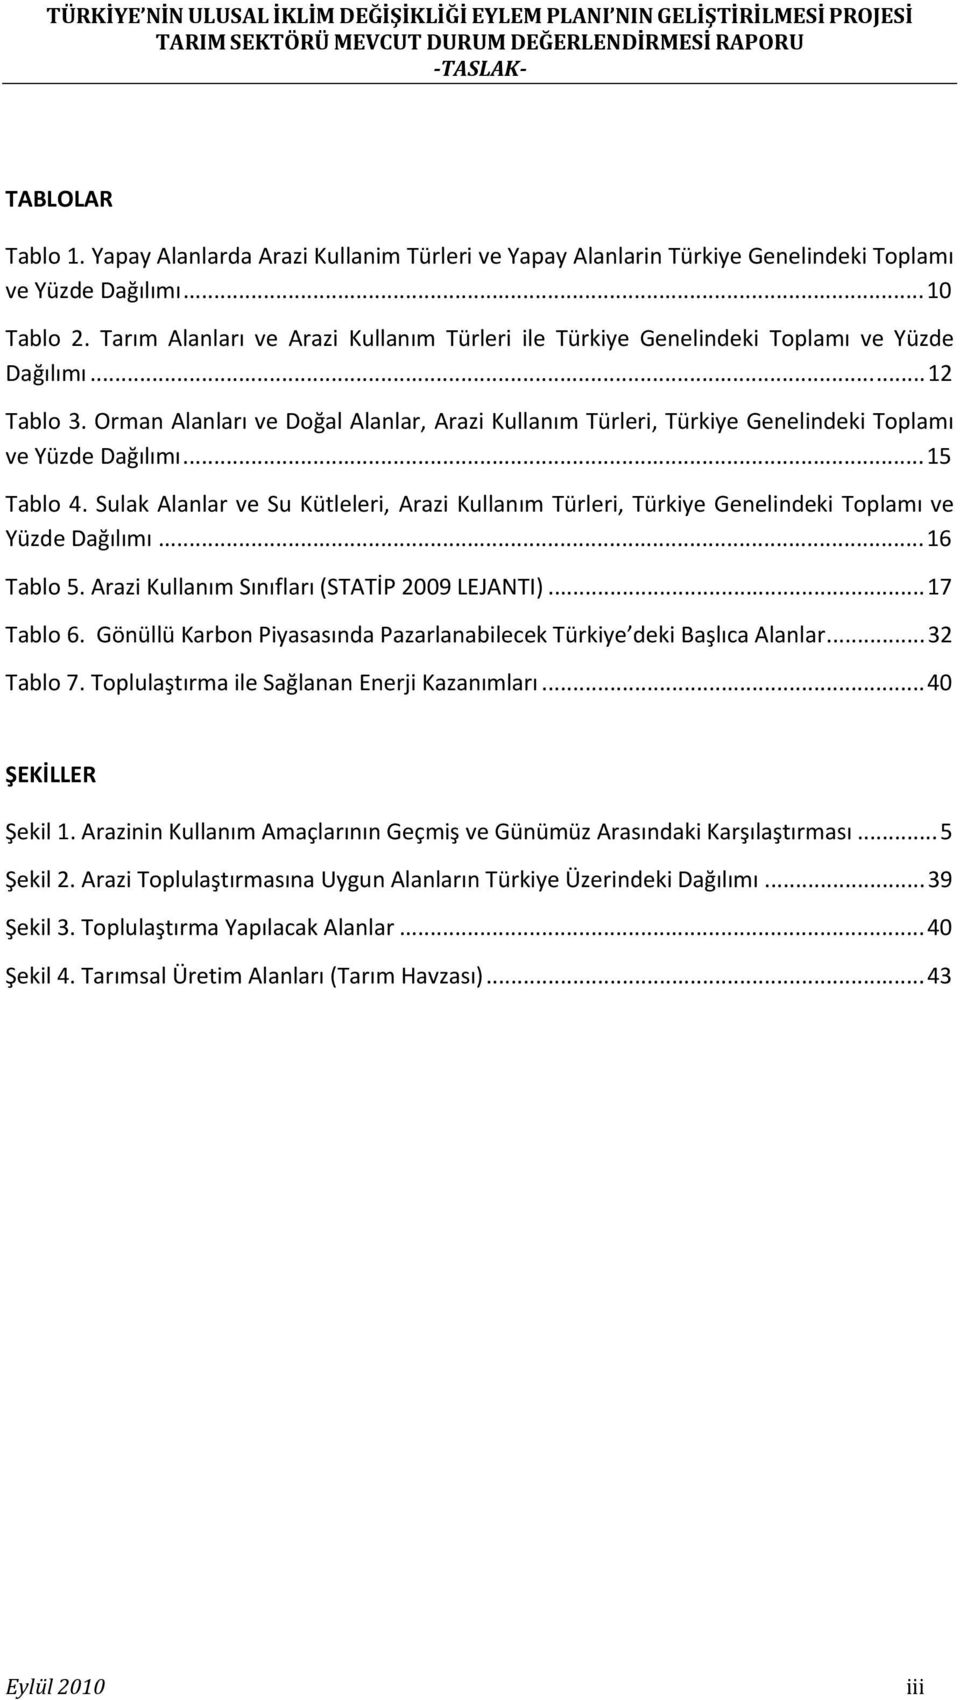 Orman Alanları ve Doğal Alanlar, Arazi Kullanım Türleri, Türkiye Genelindeki Toplamı ve Yüzde Dağılımı...15 Tablo 4.